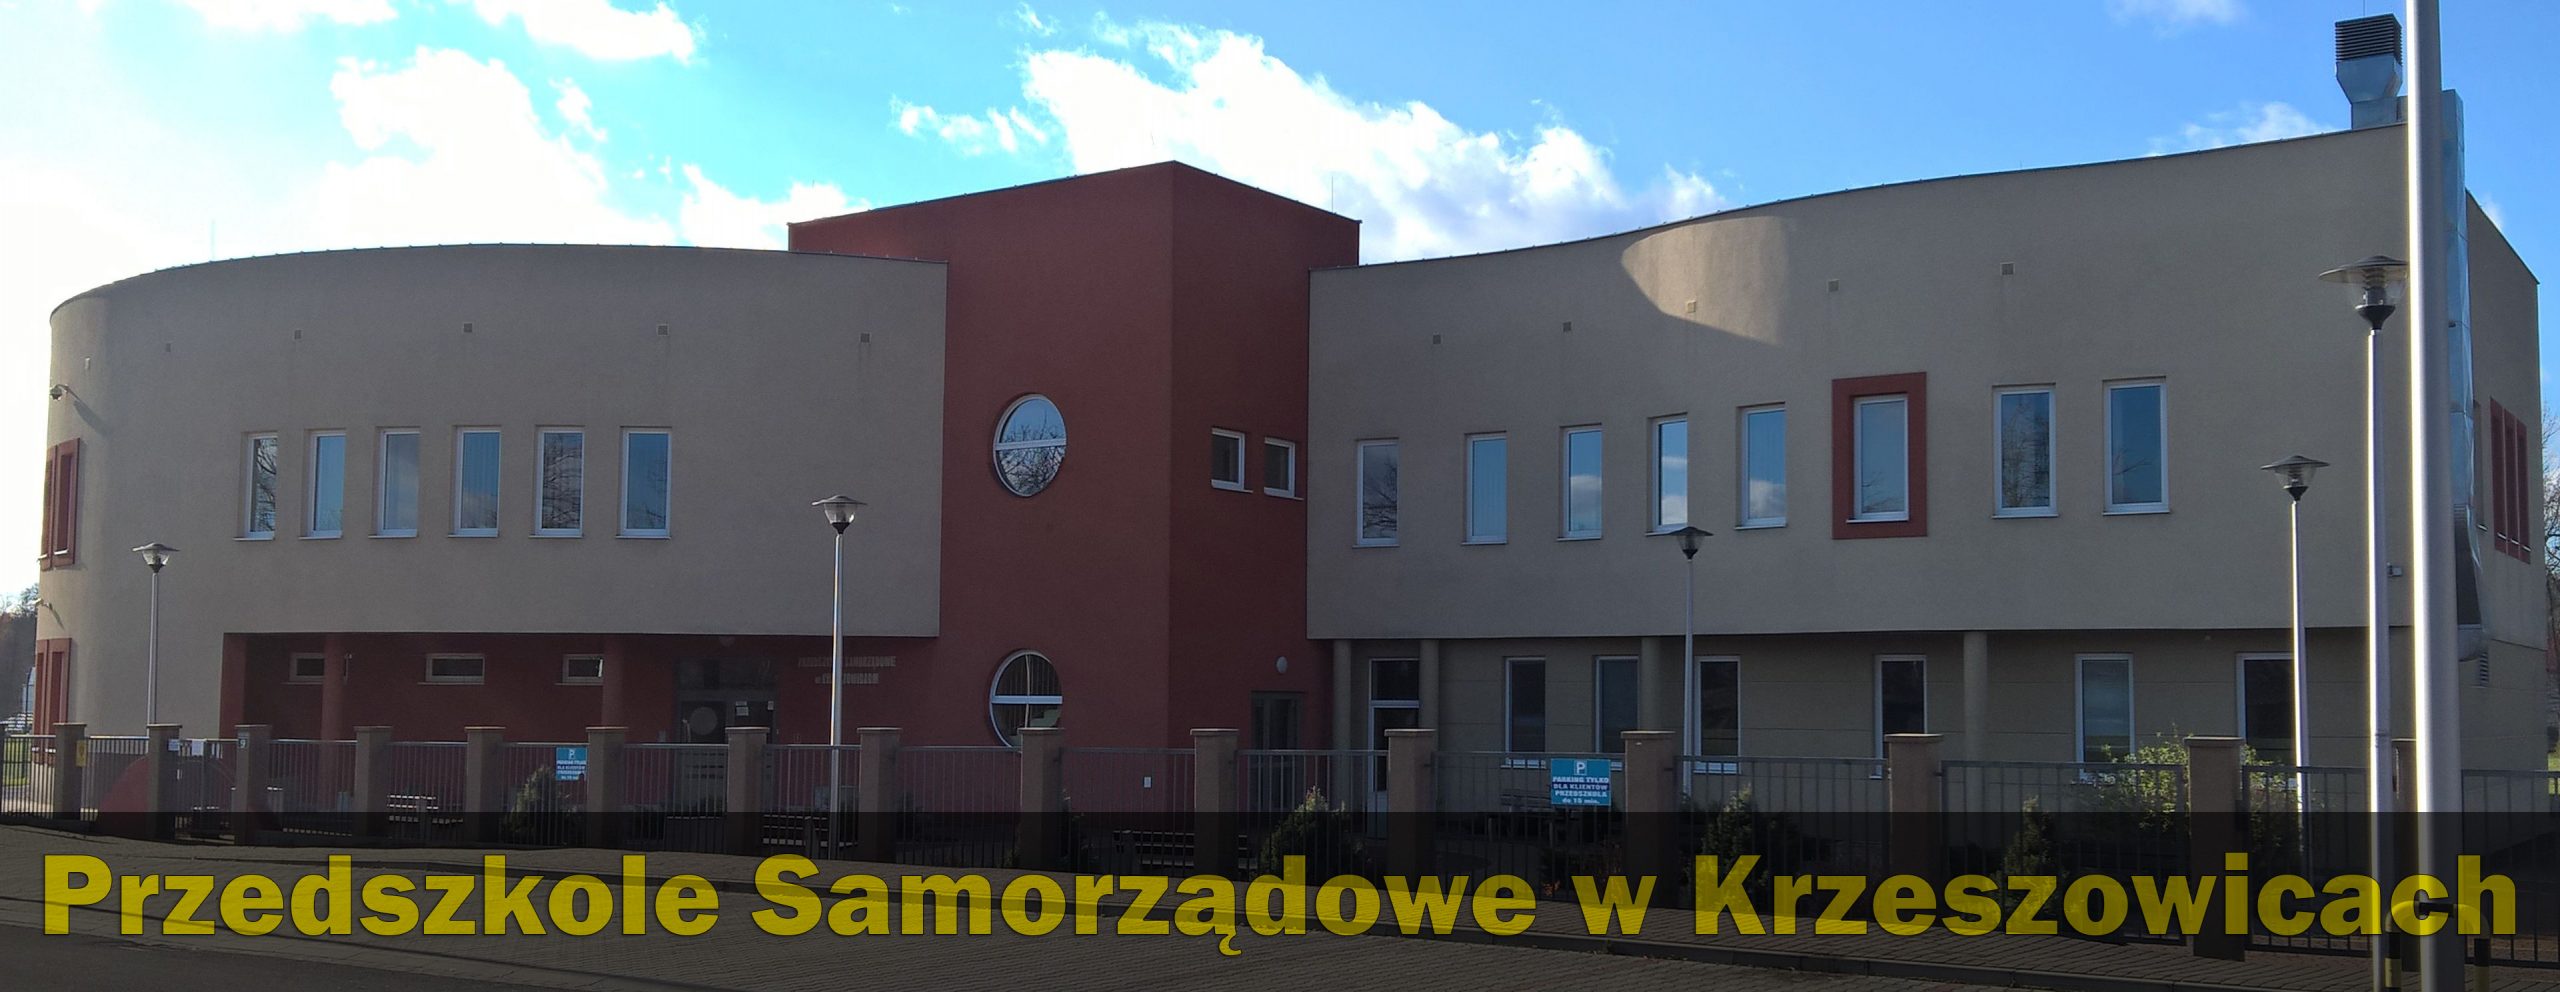 Przedszkole Samorządowe w Krzeszowicach